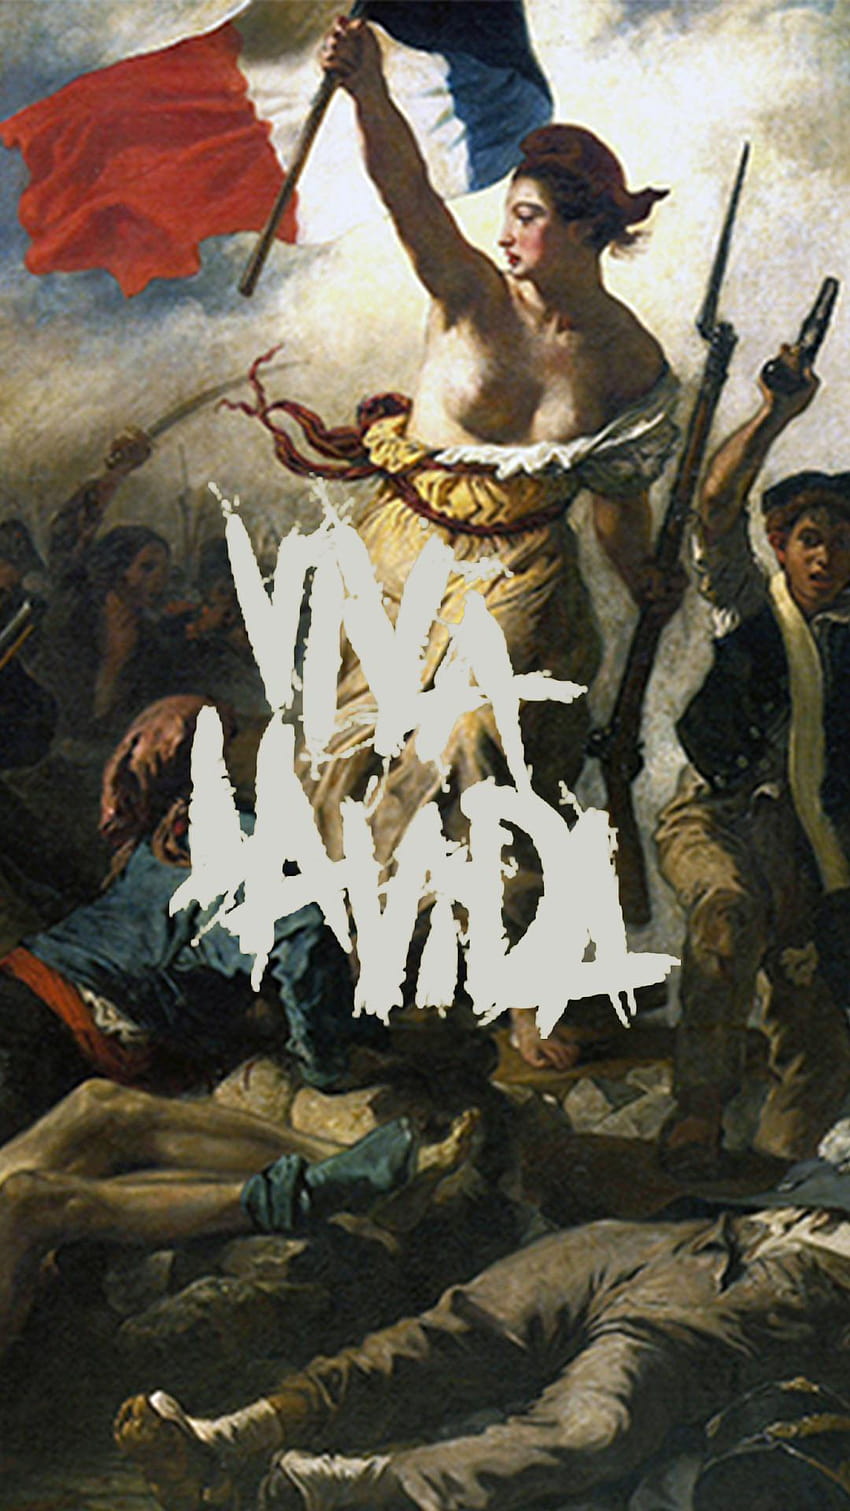 A Viva La Vida iPhone : Coldplay HD phone wallpaper